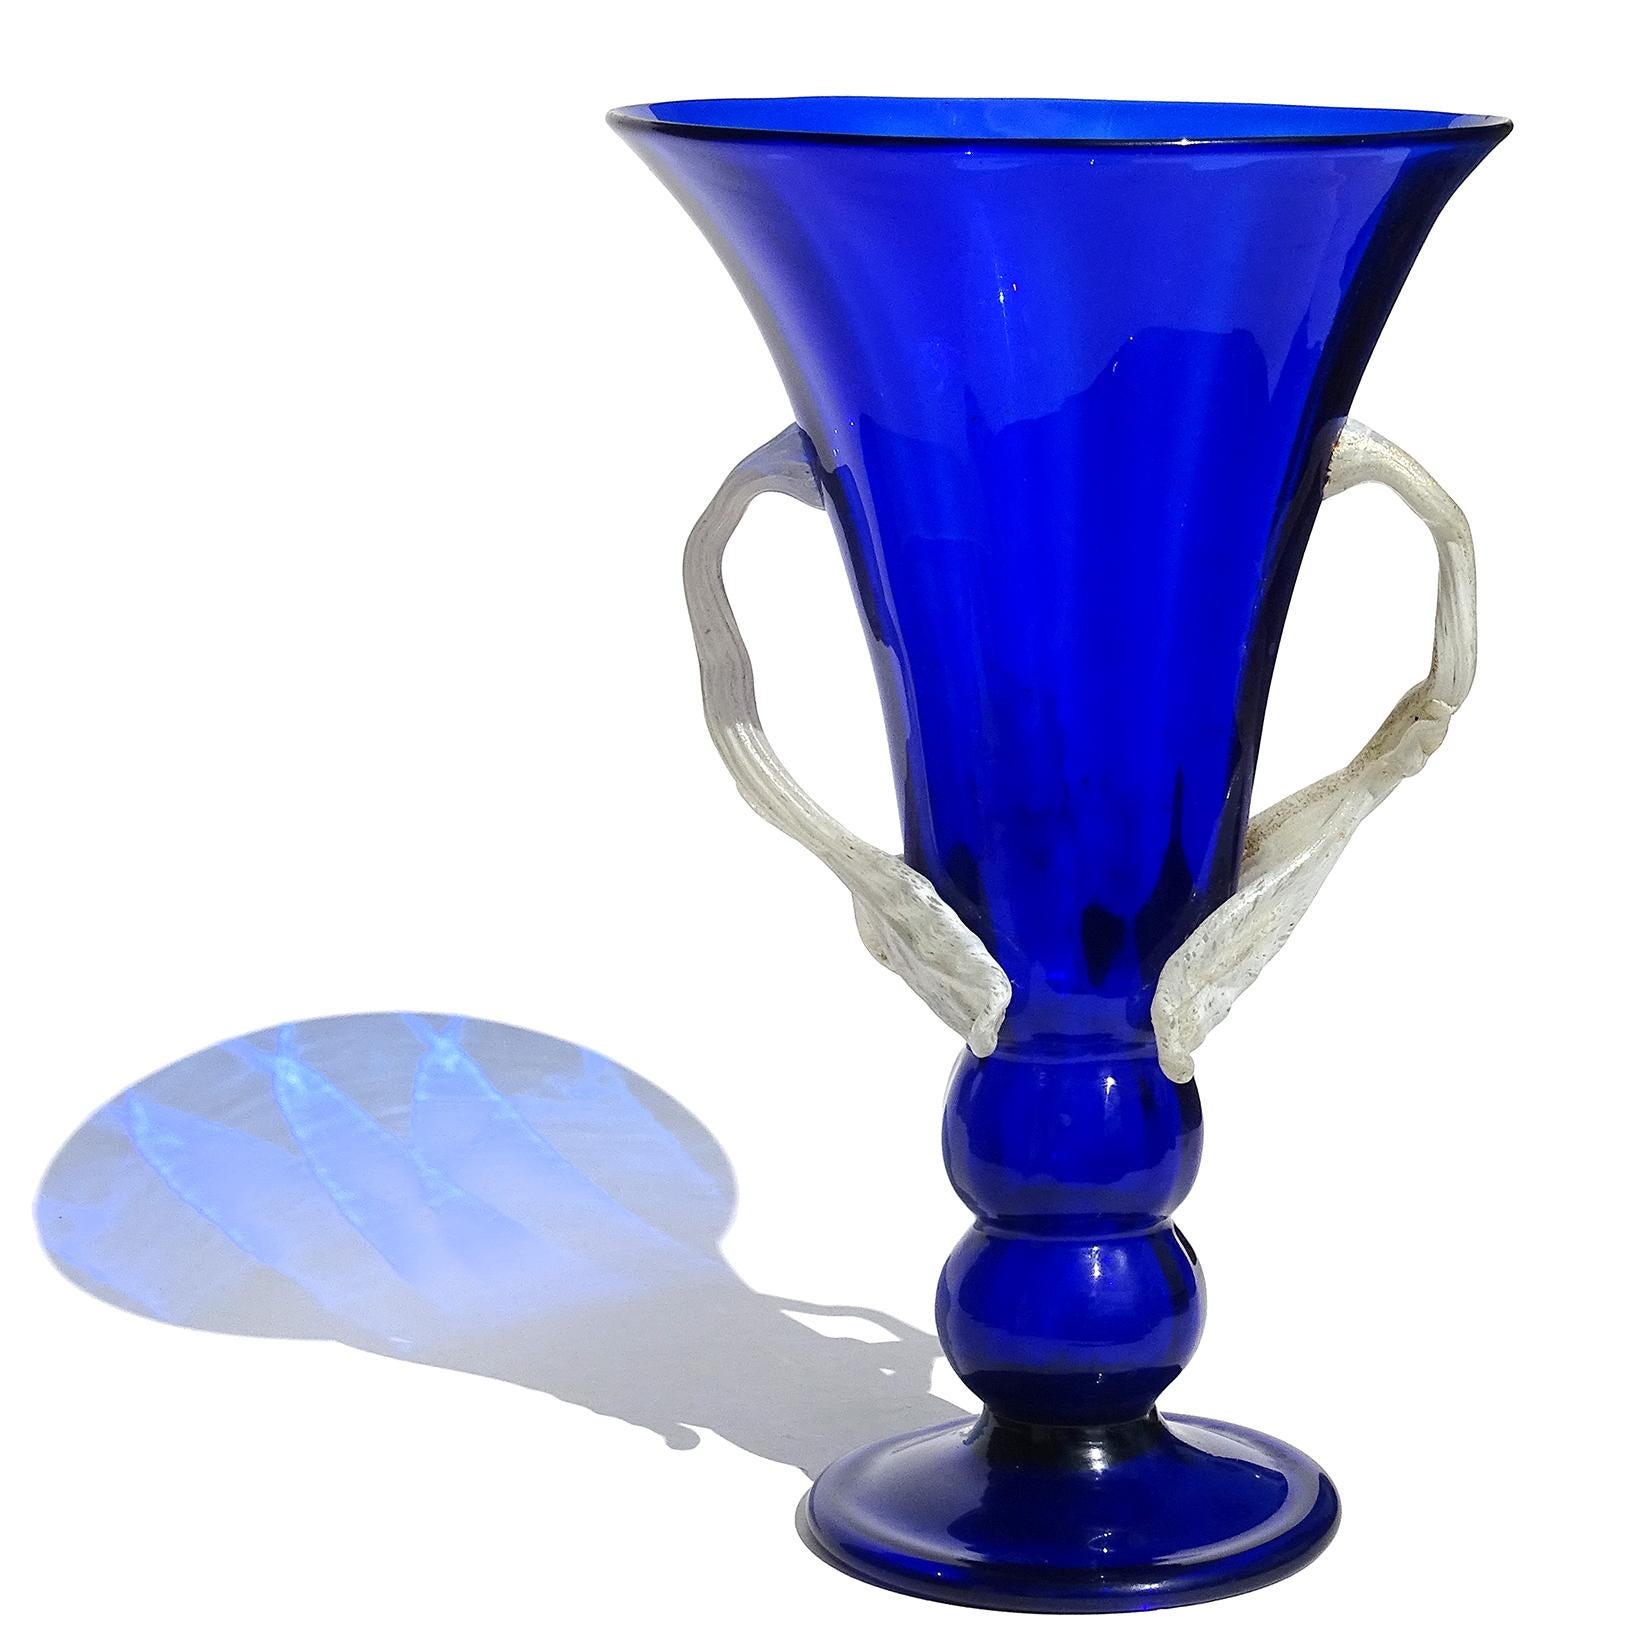 Schöne antike Murano mundgeblasen reich kobaltblau italienische Kunst Glas Blumenvase. Dokumentiert bei der Firma Artistica Soffiera Vetreria - Barovier Seguso Ferro. Das Unternehmen war nur 4 Jahre lang tätig (1933-1937), bevor es zu Seguso Vetri